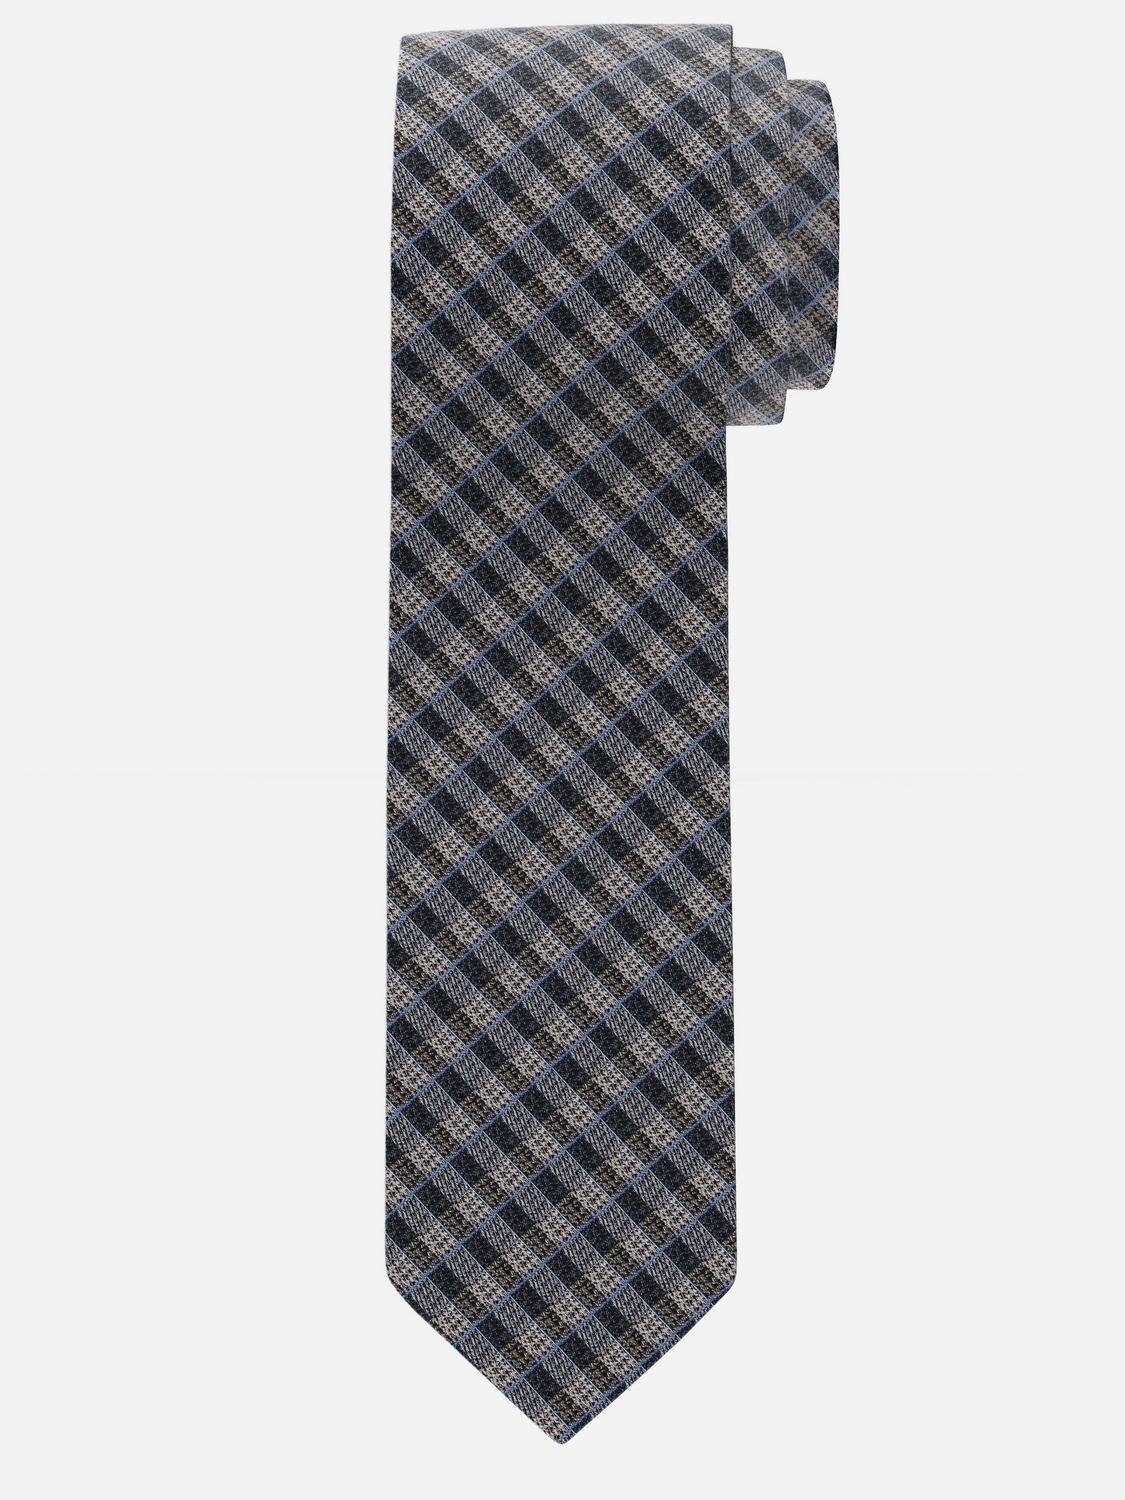 OLYMP 1751/40 Krawatte Krawatten